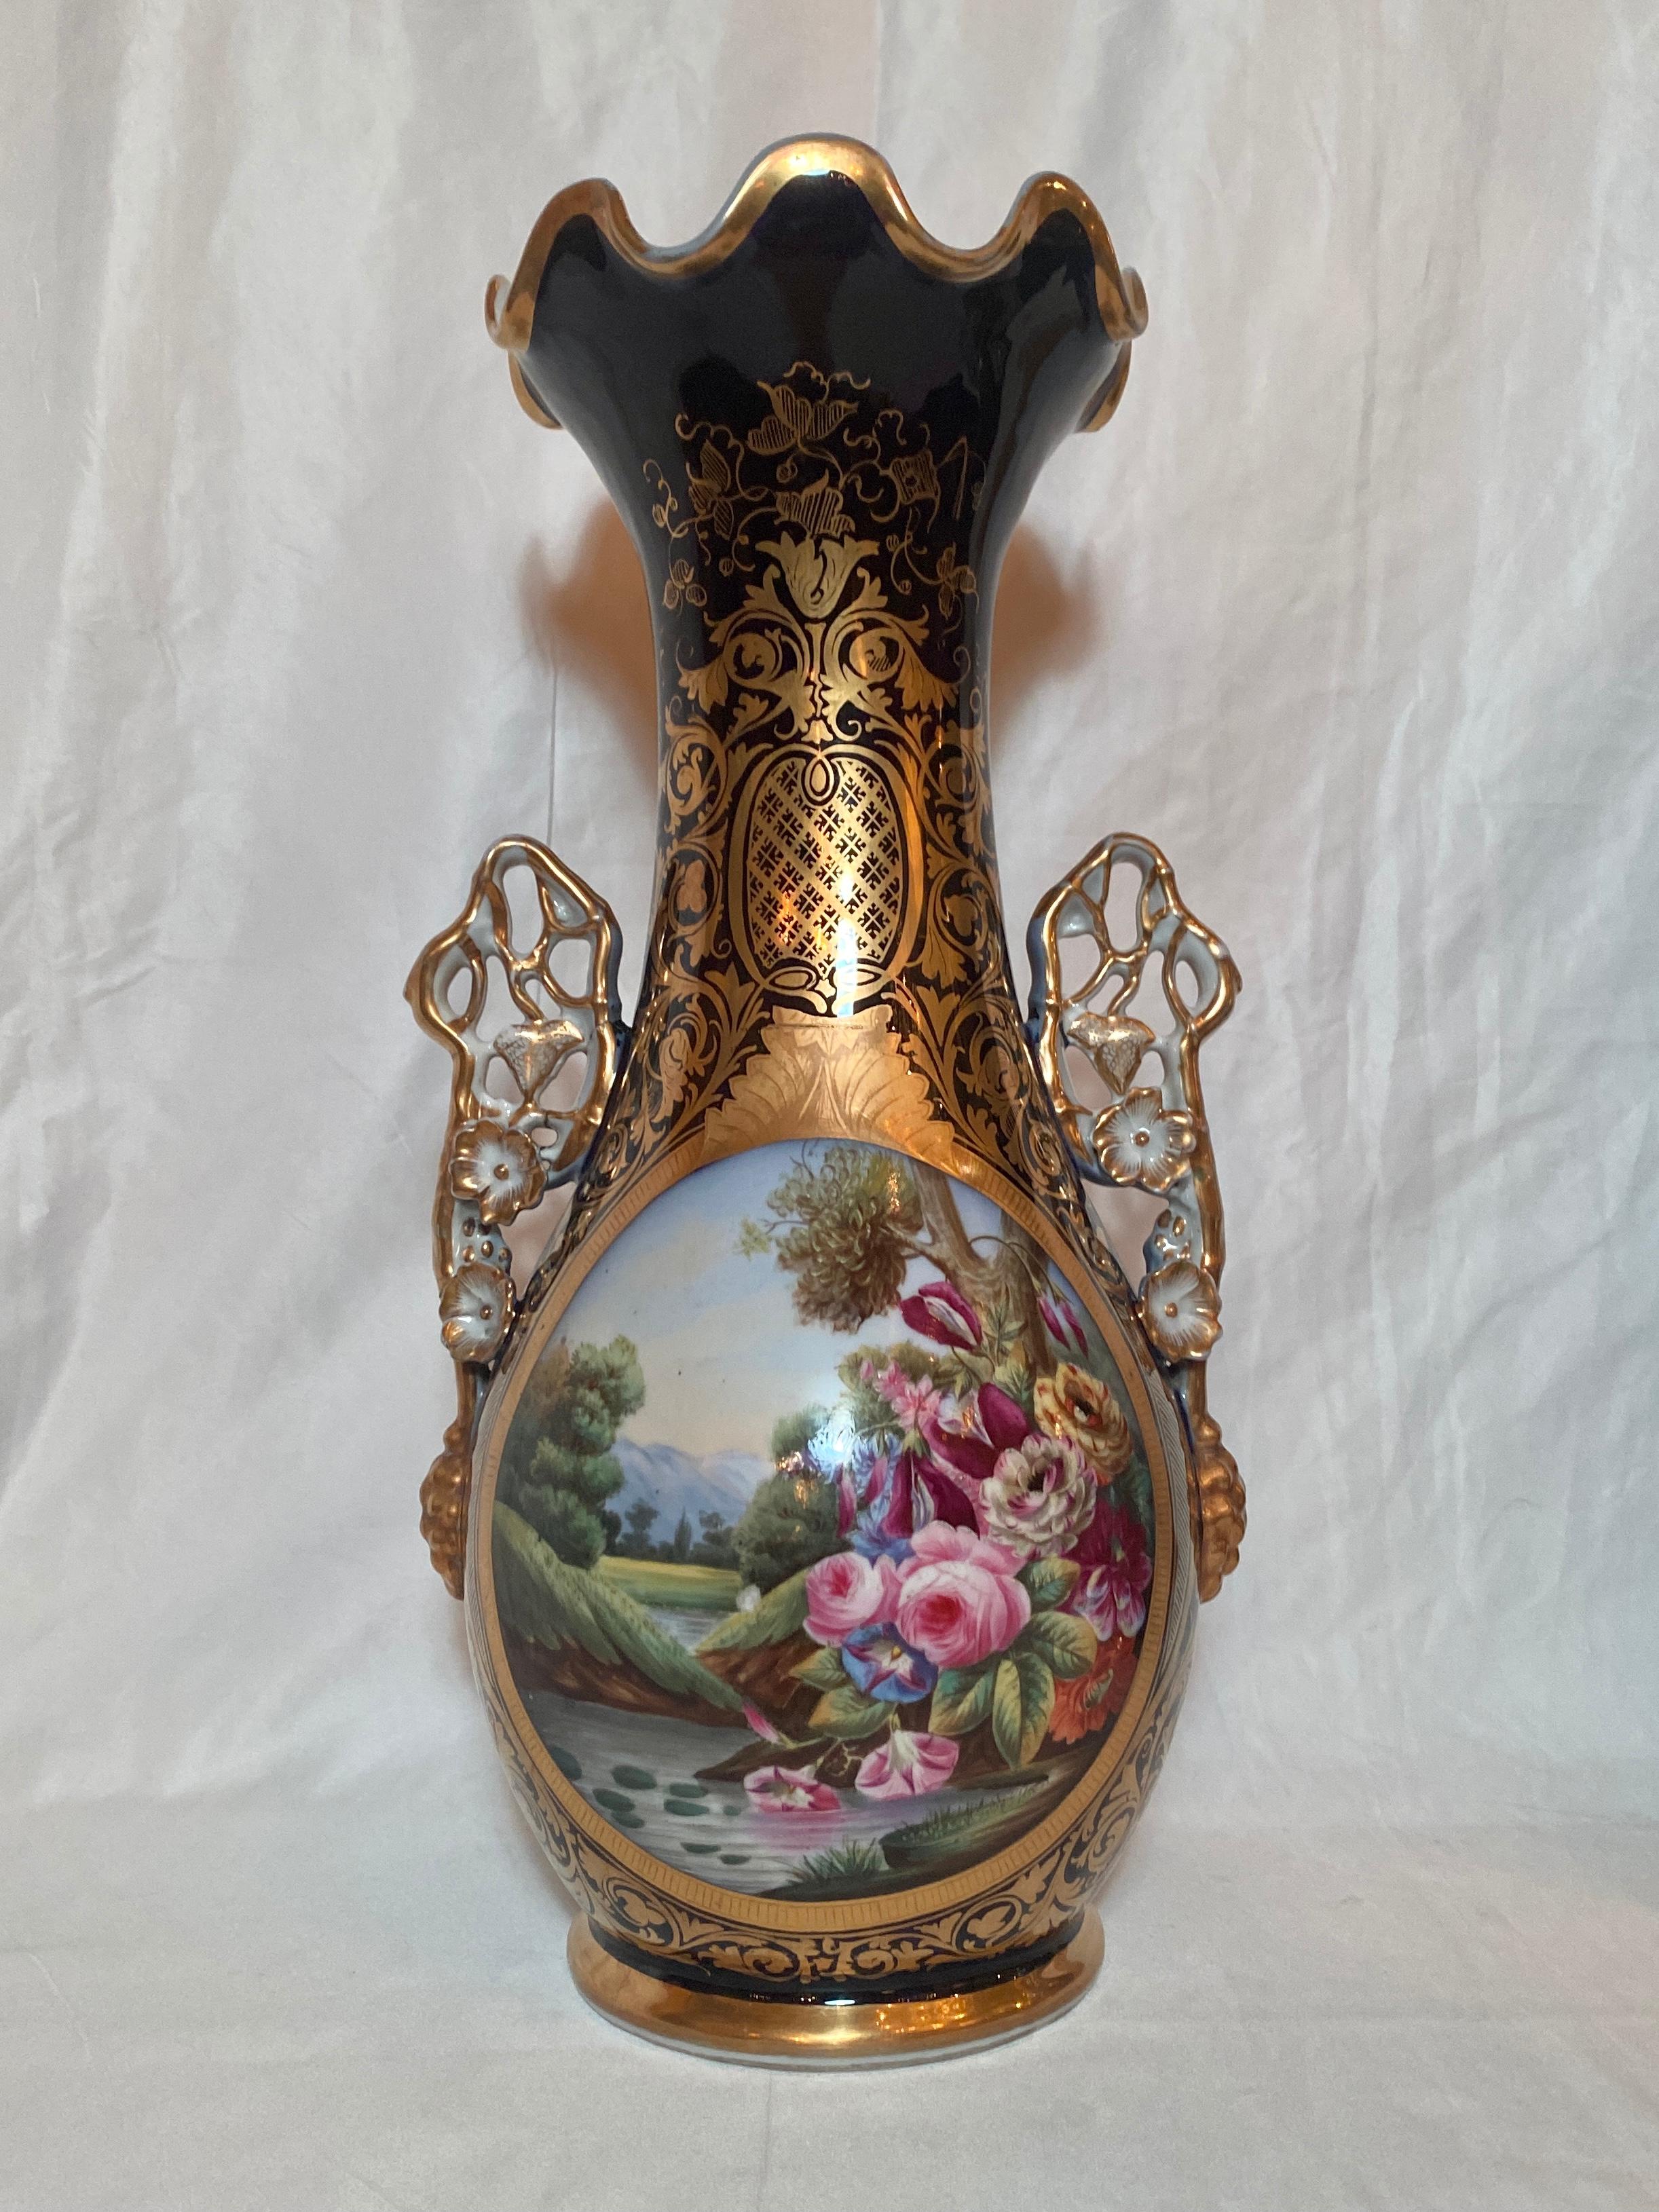 Exceptional pair antique French Vieux Paris enameled porcelain cobalt & gold urns, Circa 1845-65.